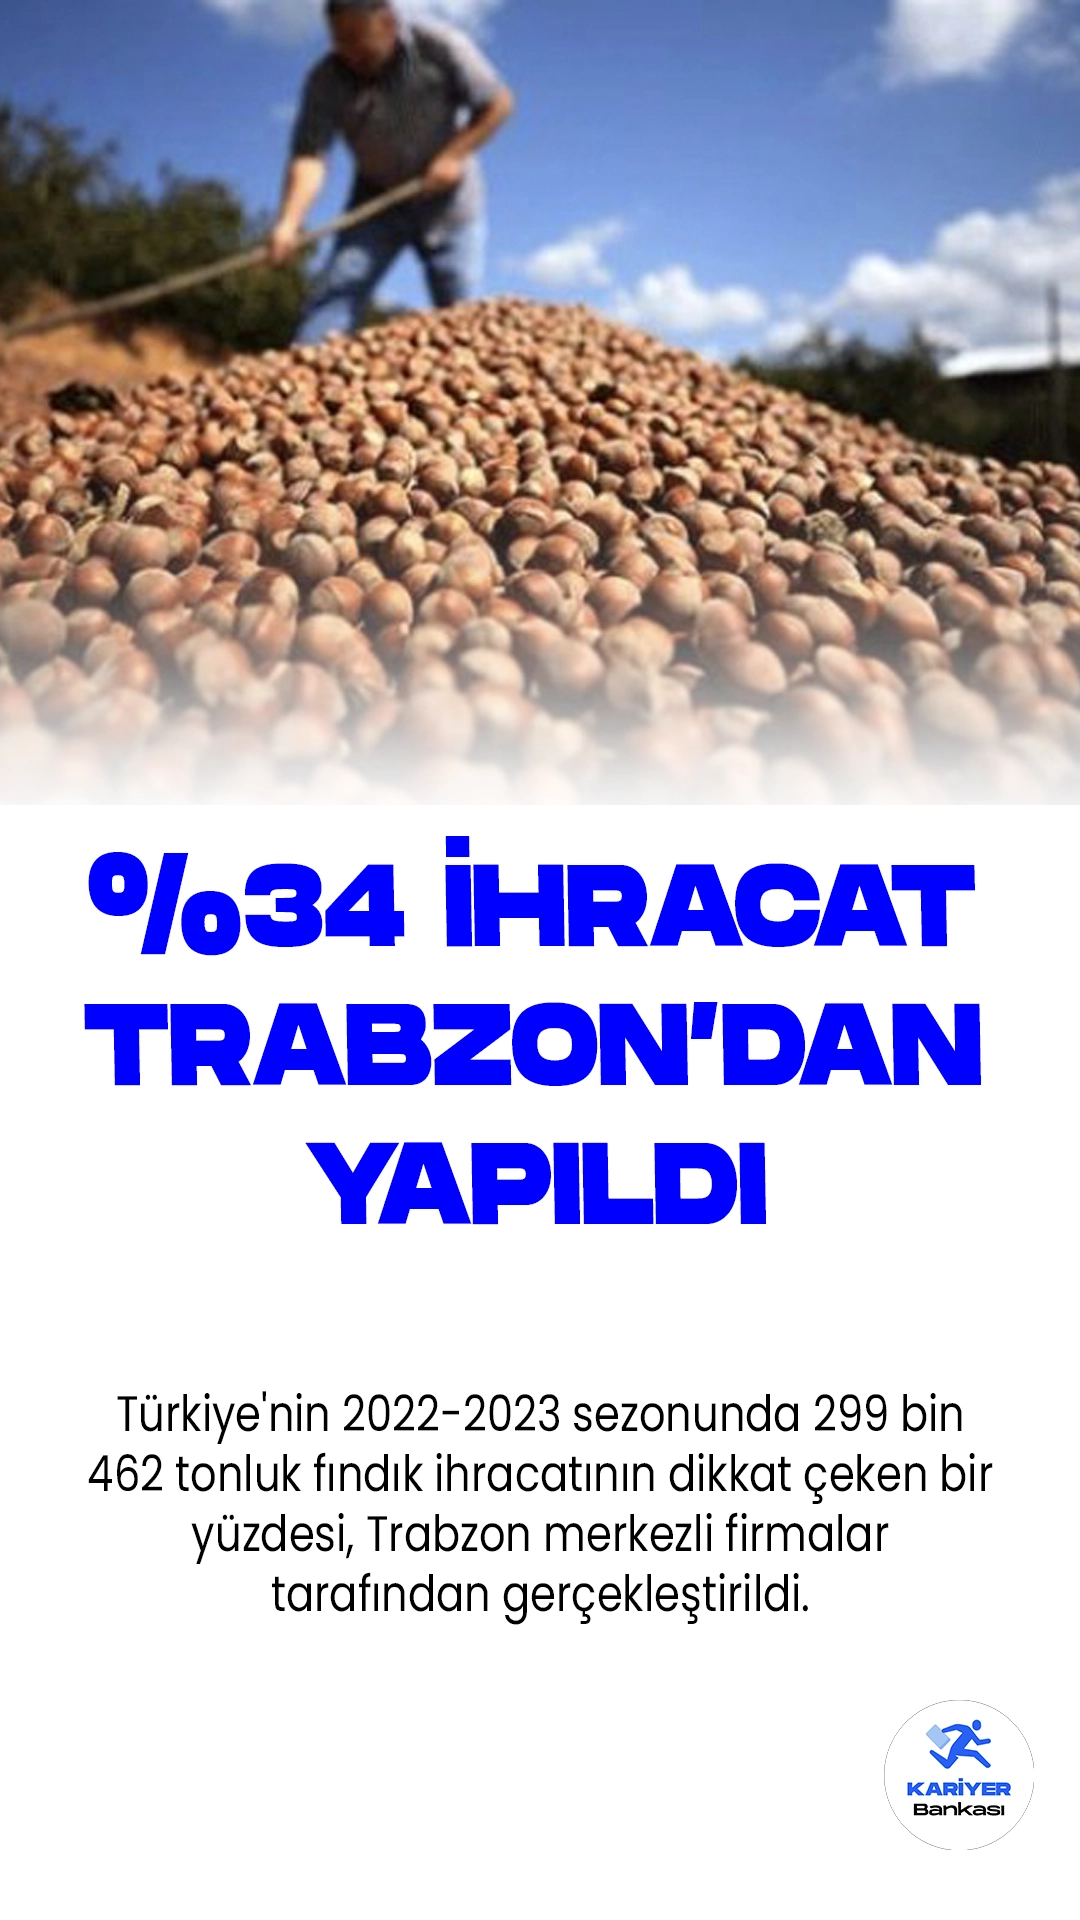 Trabzon Firmaları Türkiye Fındık İhracatının Yüzde 34'ünü Gerçekleştirdi.Türkiye'nin 2022-2023 sezonunda 299 bin 462 tonluk fındık ihracatının dikkat çeken bir yüzdesi, Trabzon merkezli firmalar tarafından gerçekleştirildi. Doğu Karadeniz İhracatçılar Birliği (DKİB), 1 Eylül 2022'de başlayıp 31 Ağustos 2023 tarihine kadar süren bu döneme ilişkin önemli bilgileri içeren bir açıklama yayınladı.